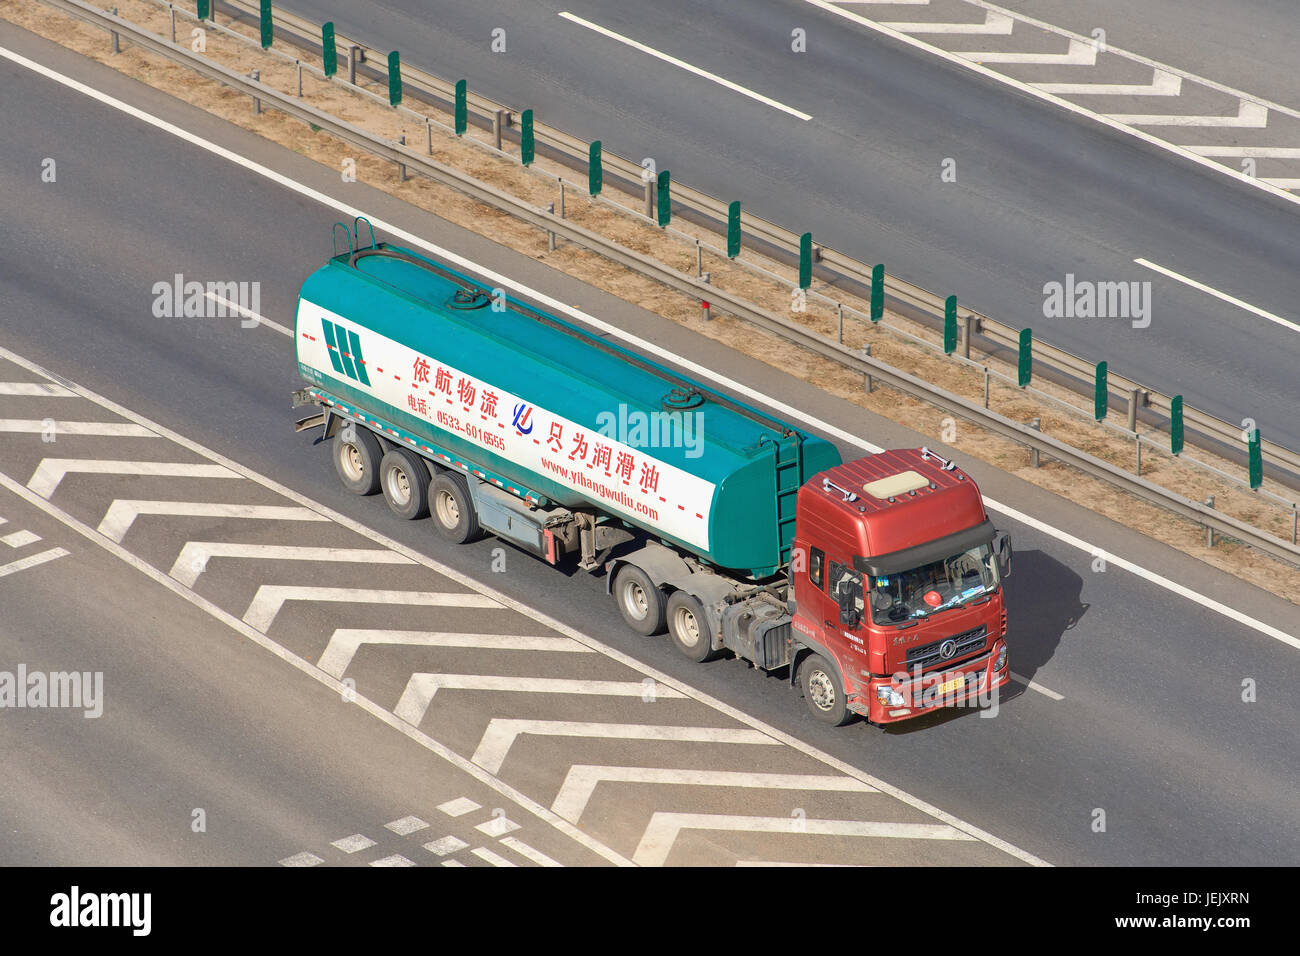 PEKING - 7. JULI 2015. Yihangwuliu Tankwagentransport. Yihangwuliu ist ein chinesisches Unternehmen, das sich auf den Transport von Schmierstoffen spezialisiert hat und 2010 gegründet wurde. Stockfoto